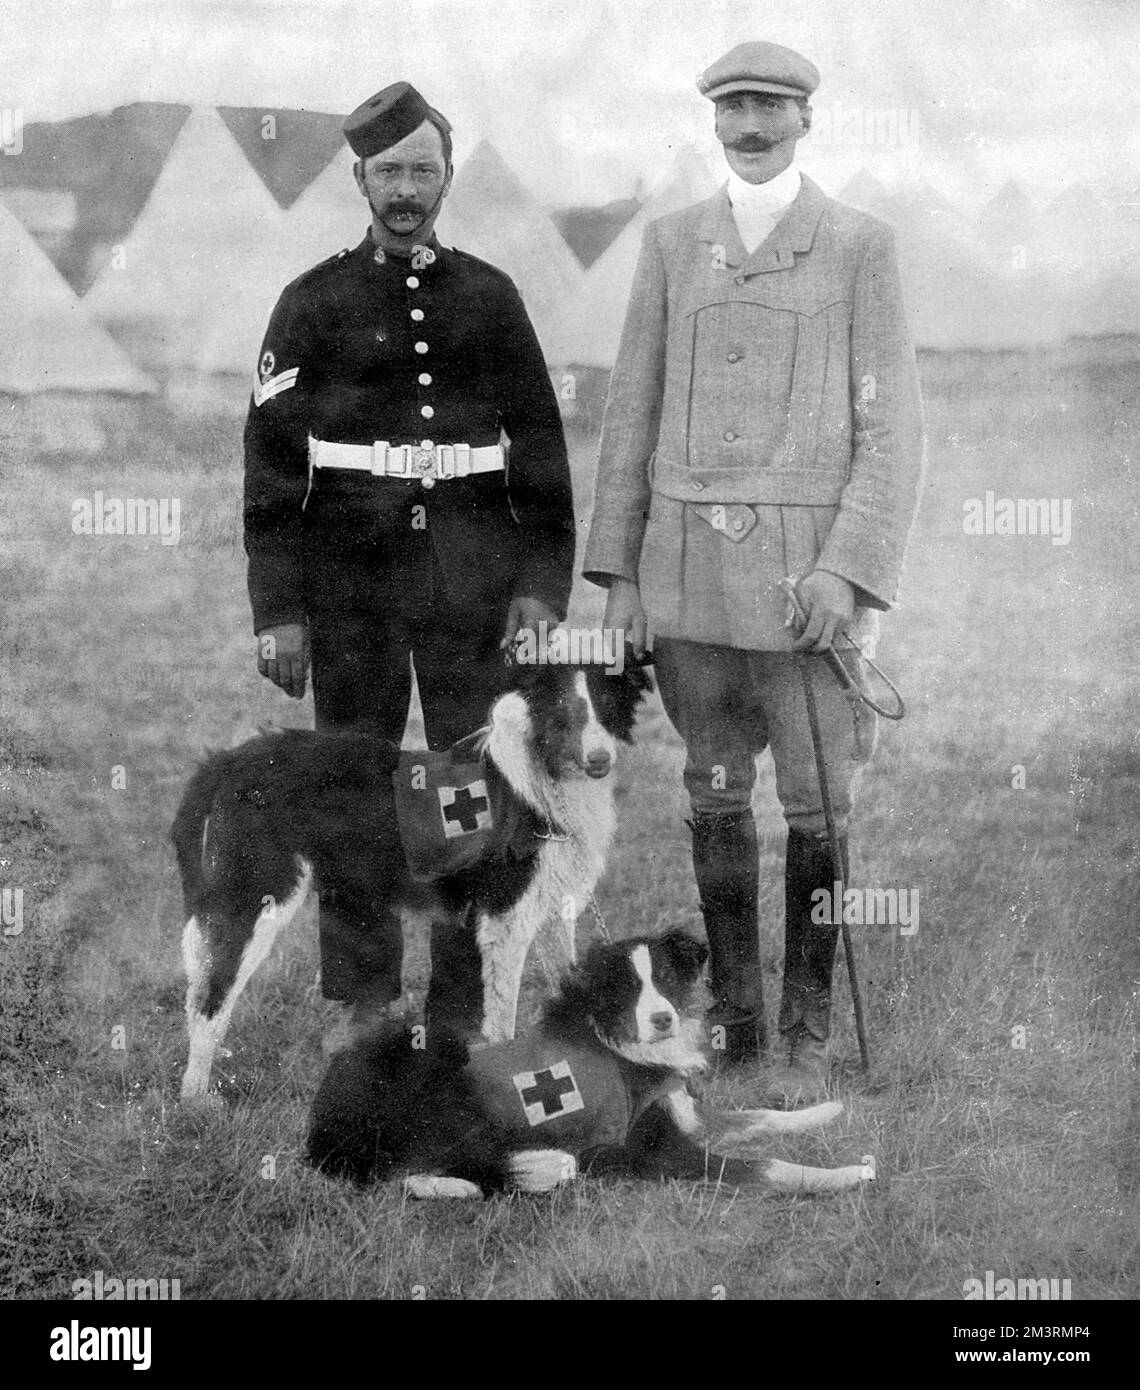 Major Edwin Hautenville Richardson, berühmter Hundetrainer und Gründer der British war Dog School während des Ersten Weltkriegs, mit zwei der Krankenwagenhunde, die er trainierte und den Russen während des Russisch-Japanischen Krieges lieferte. Datum: 1905 Stockfoto